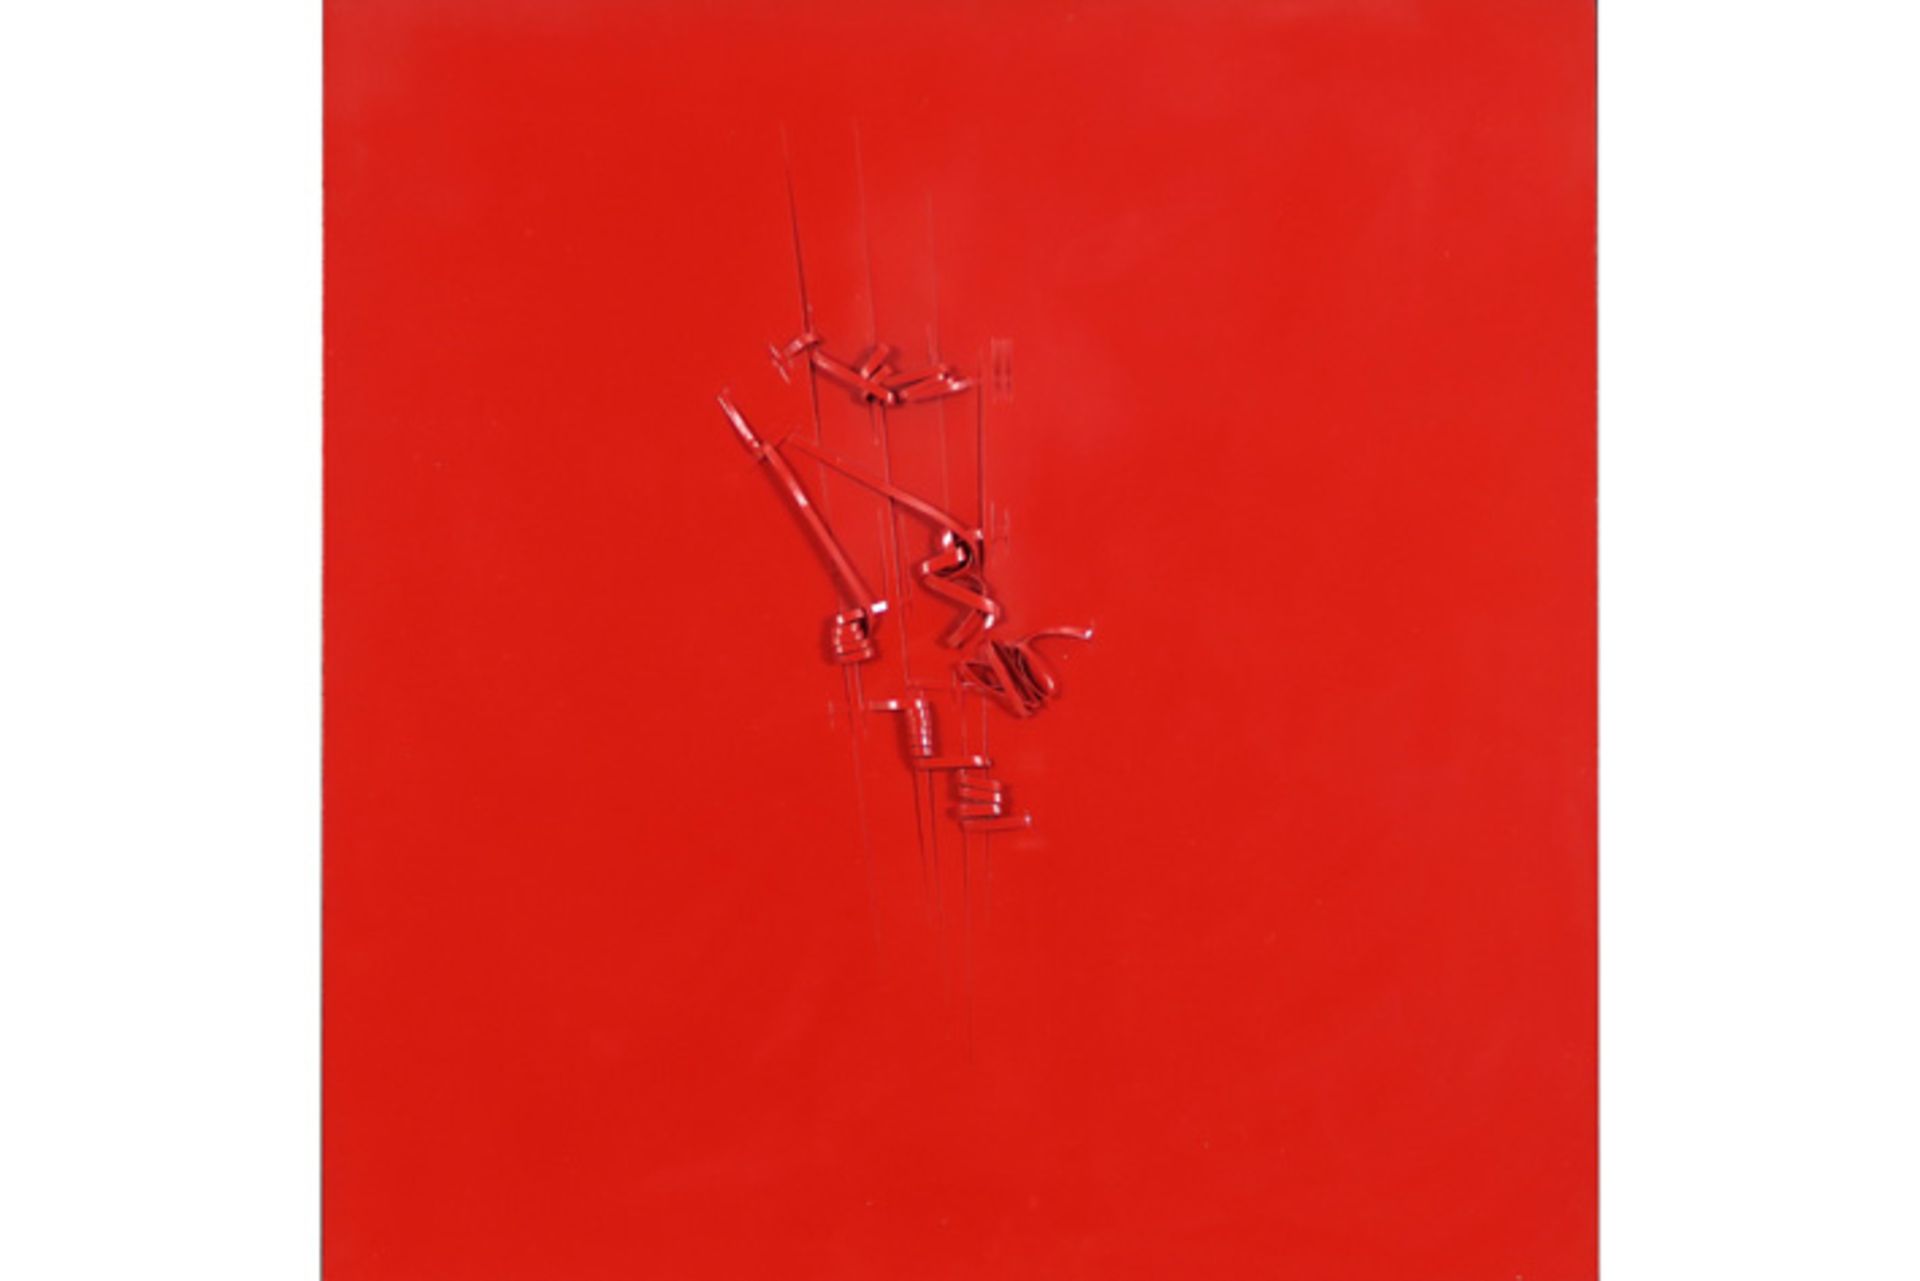 SCAMPINI PIETRO (° 1950) wandsculptuur in roodgelakt karton met een abstracte compositie - 60 x 60